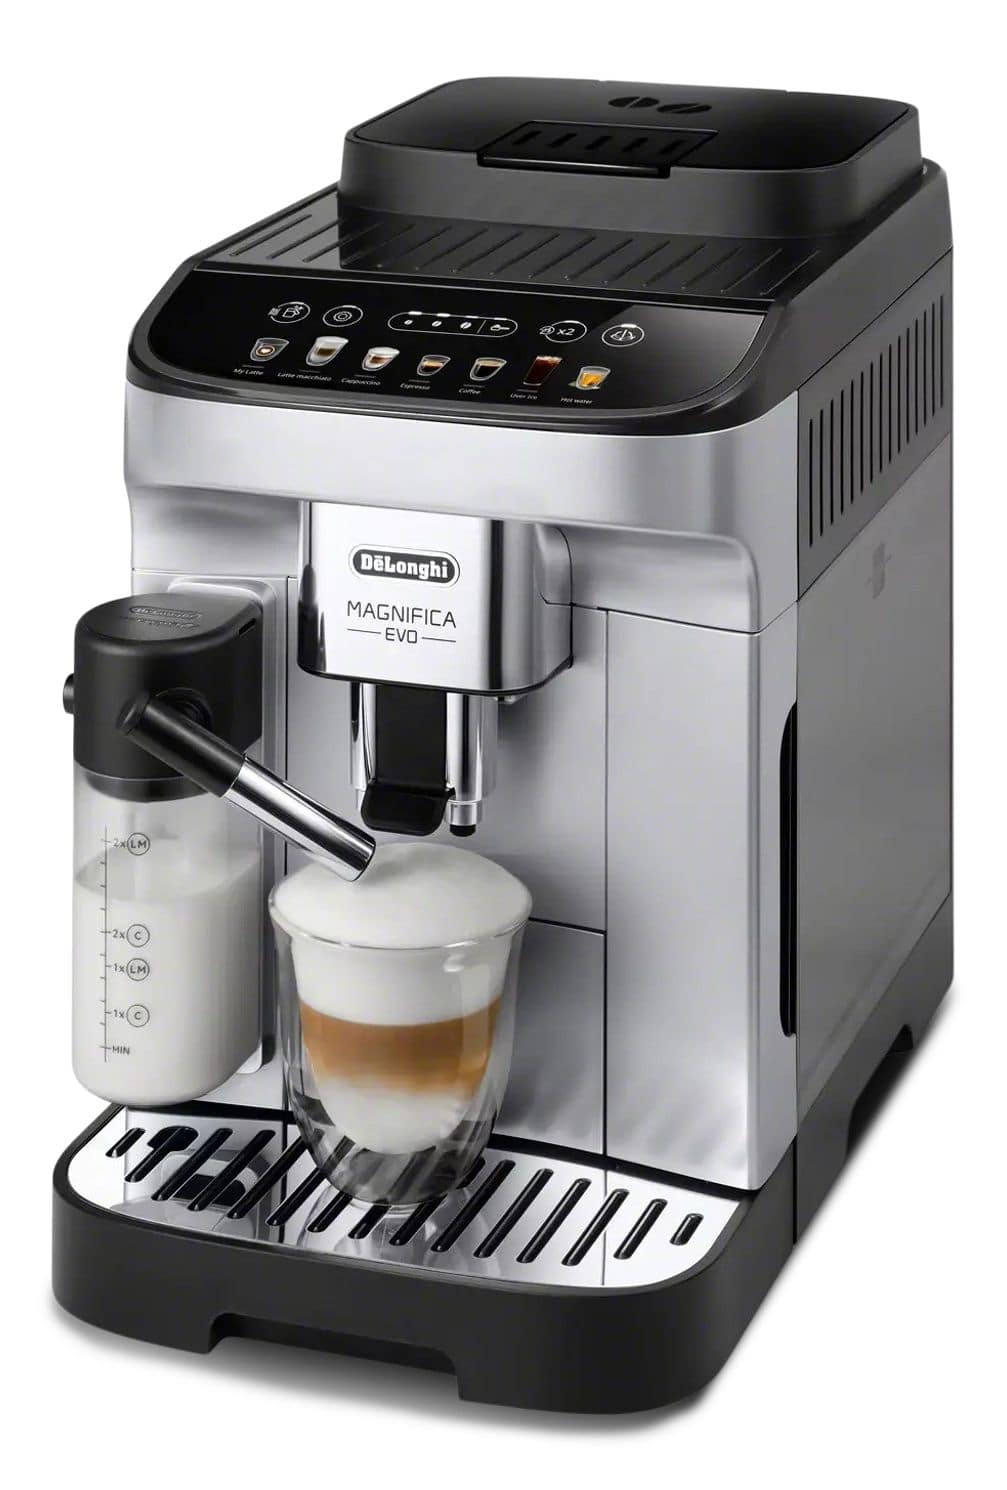 Delonghi Magnifica Evo Coffee & Espresso Machine with Automatic Milk Frother